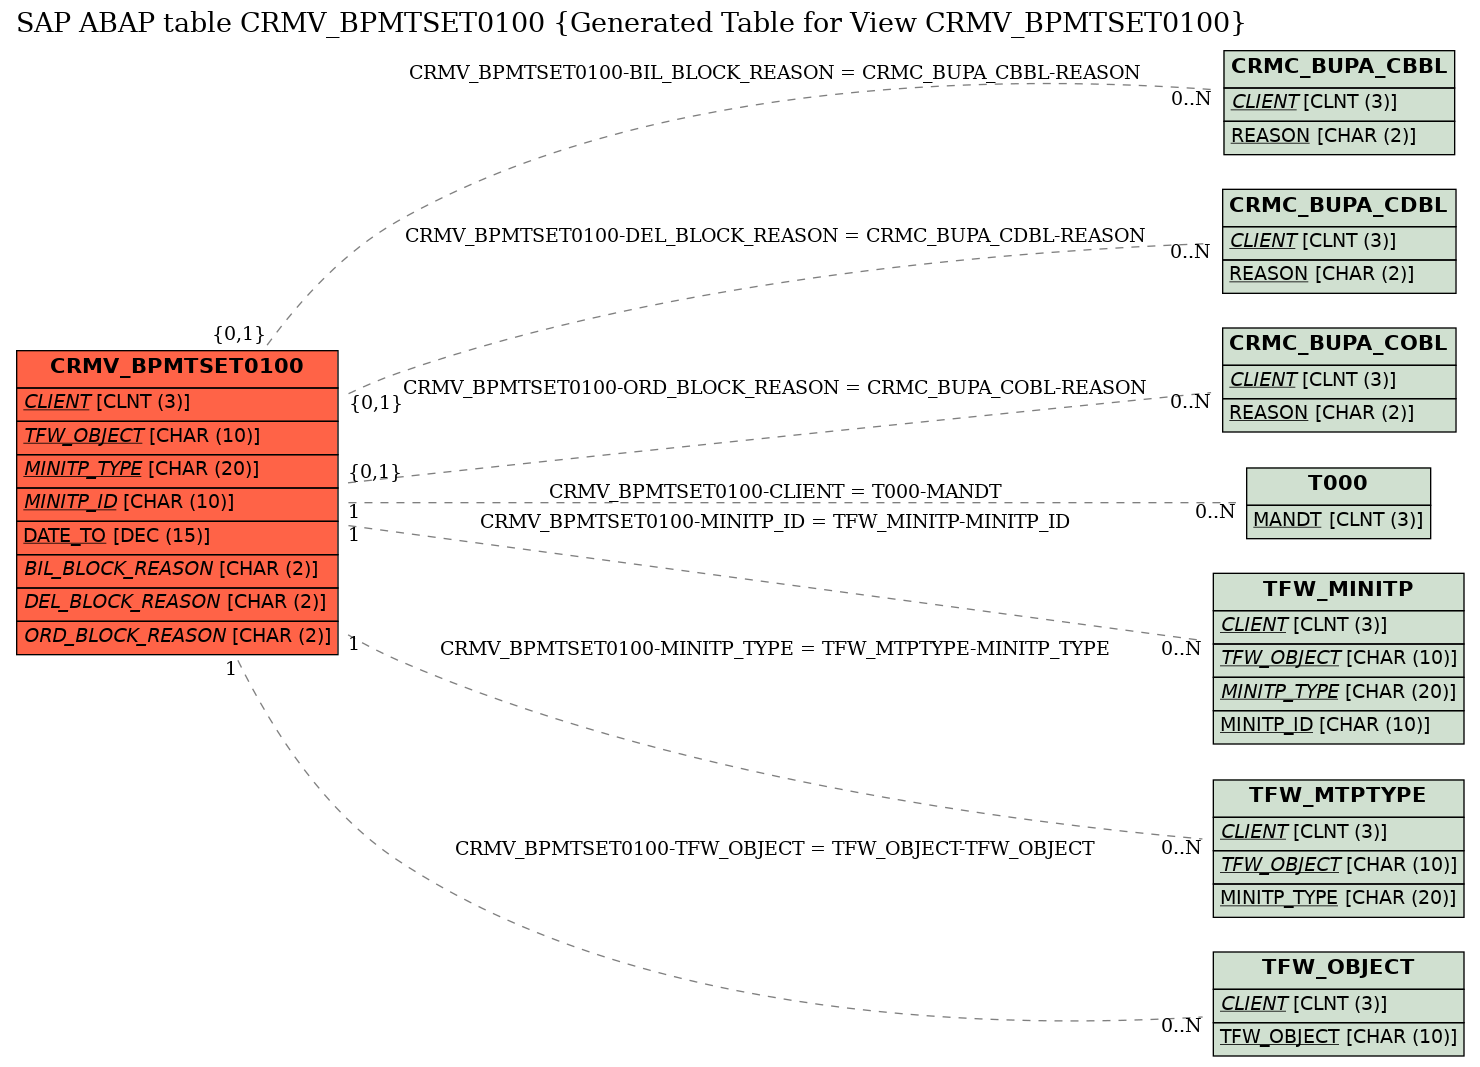 E-R Diagram for table CRMV_BPMTSET0100 (Generated Table for View CRMV_BPMTSET0100)